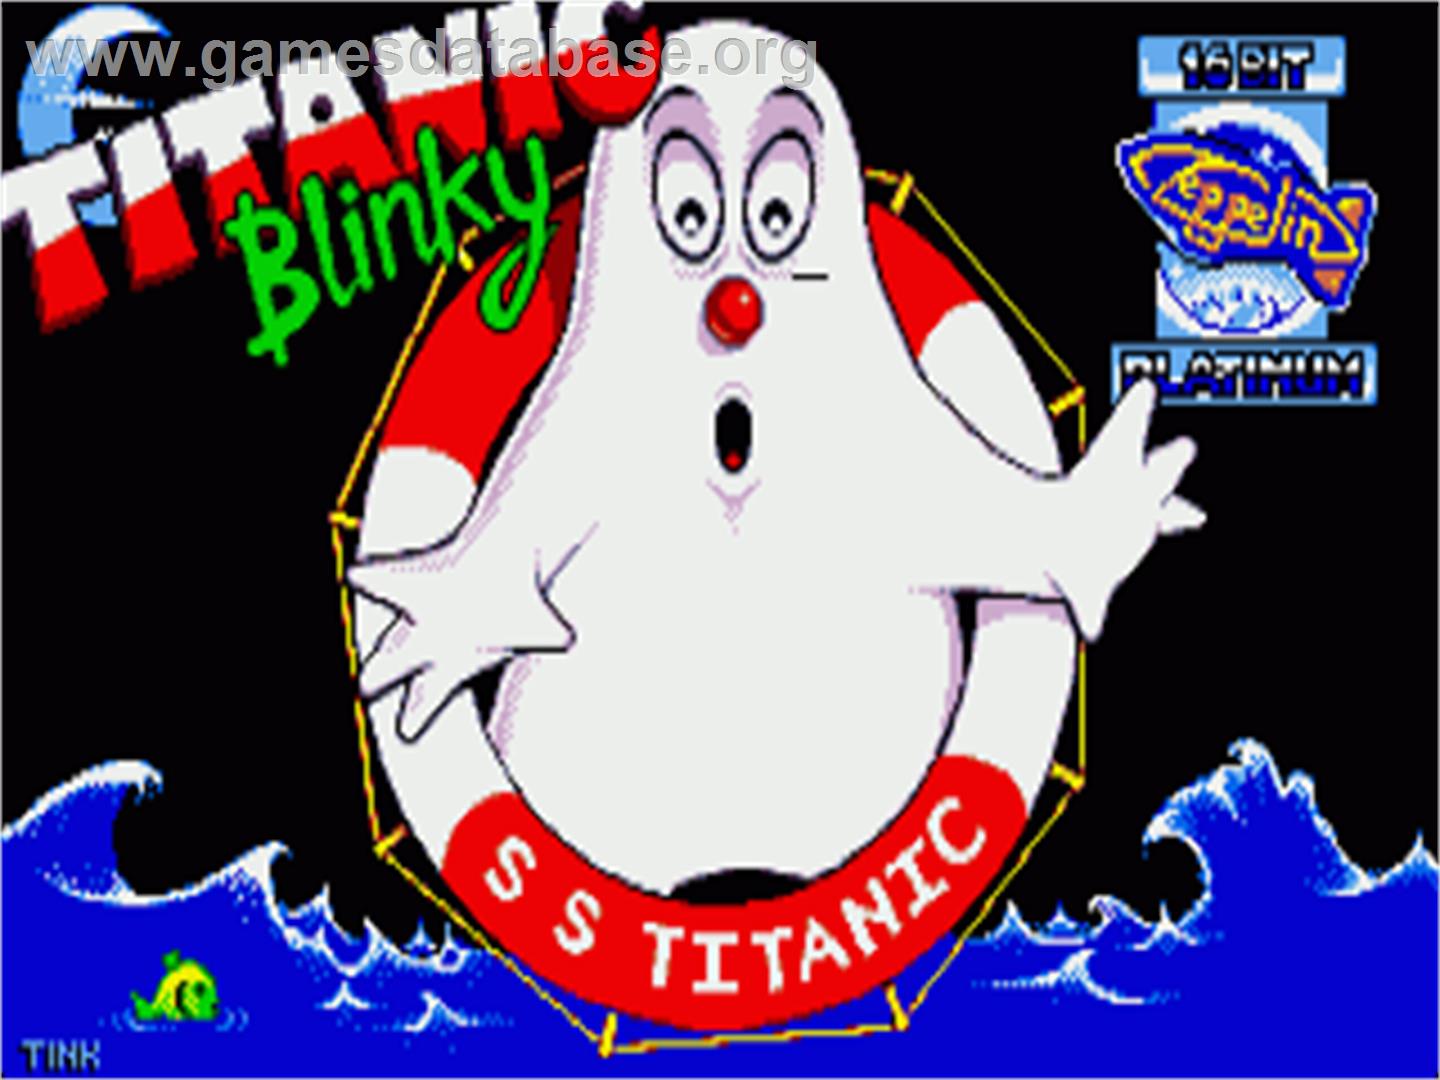 Titanic Blinky - Commodore Amiga - Artwork - Title Screen